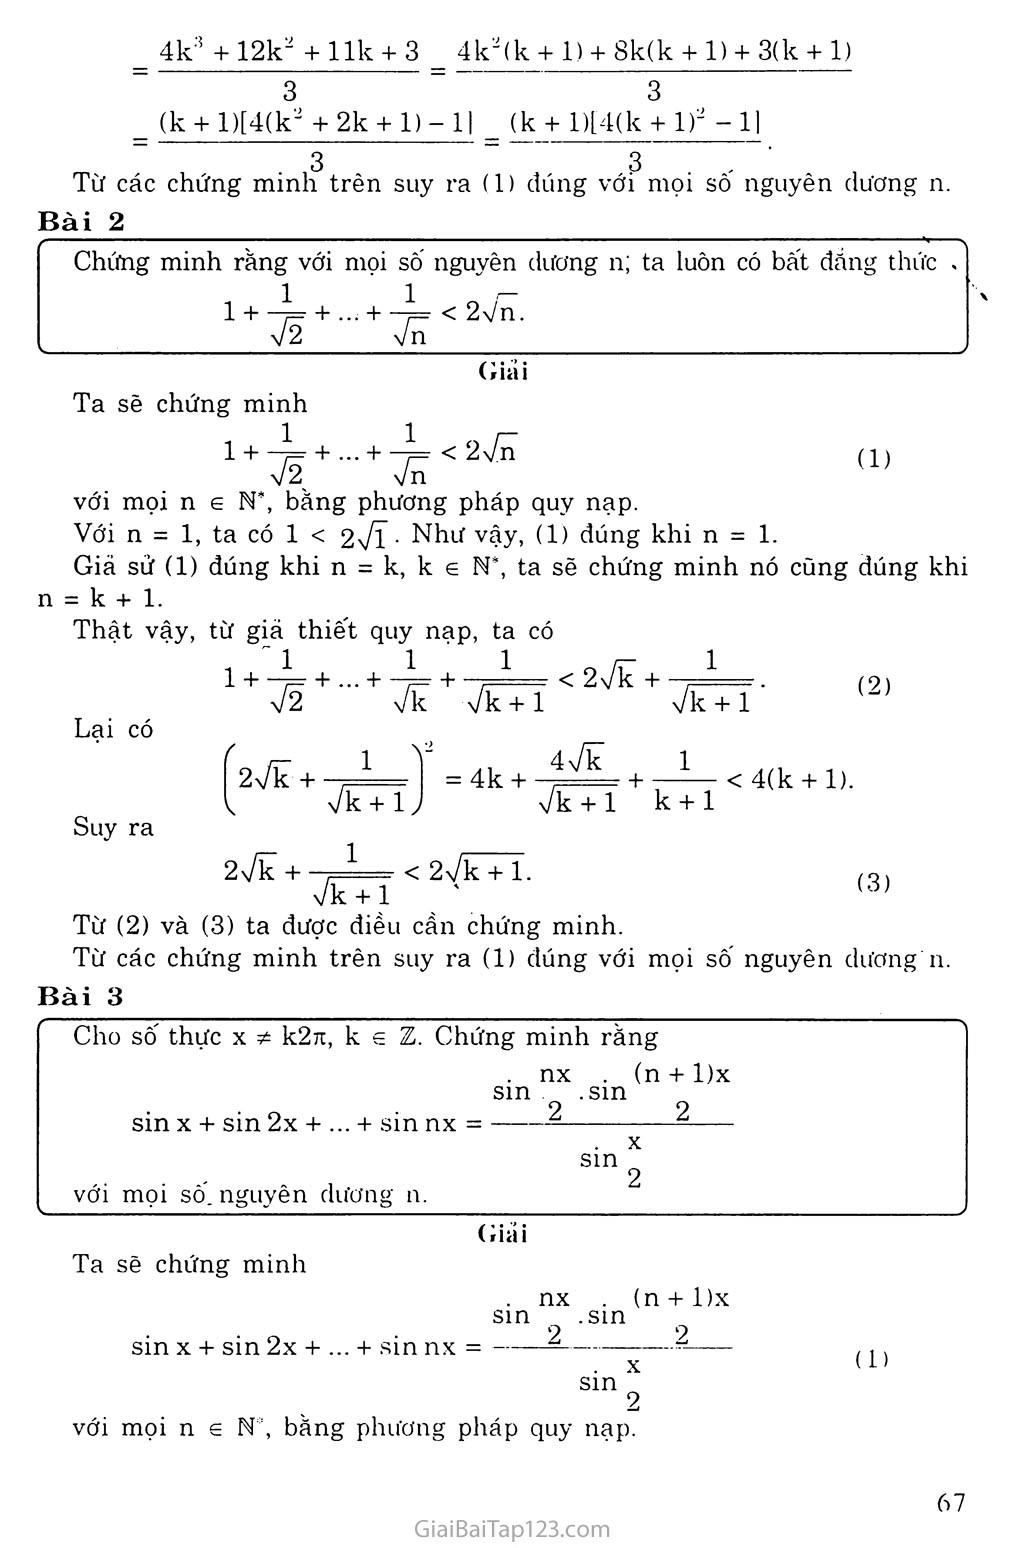 Vấn đề 1. Phương pháp qui nạp toán học trang 7